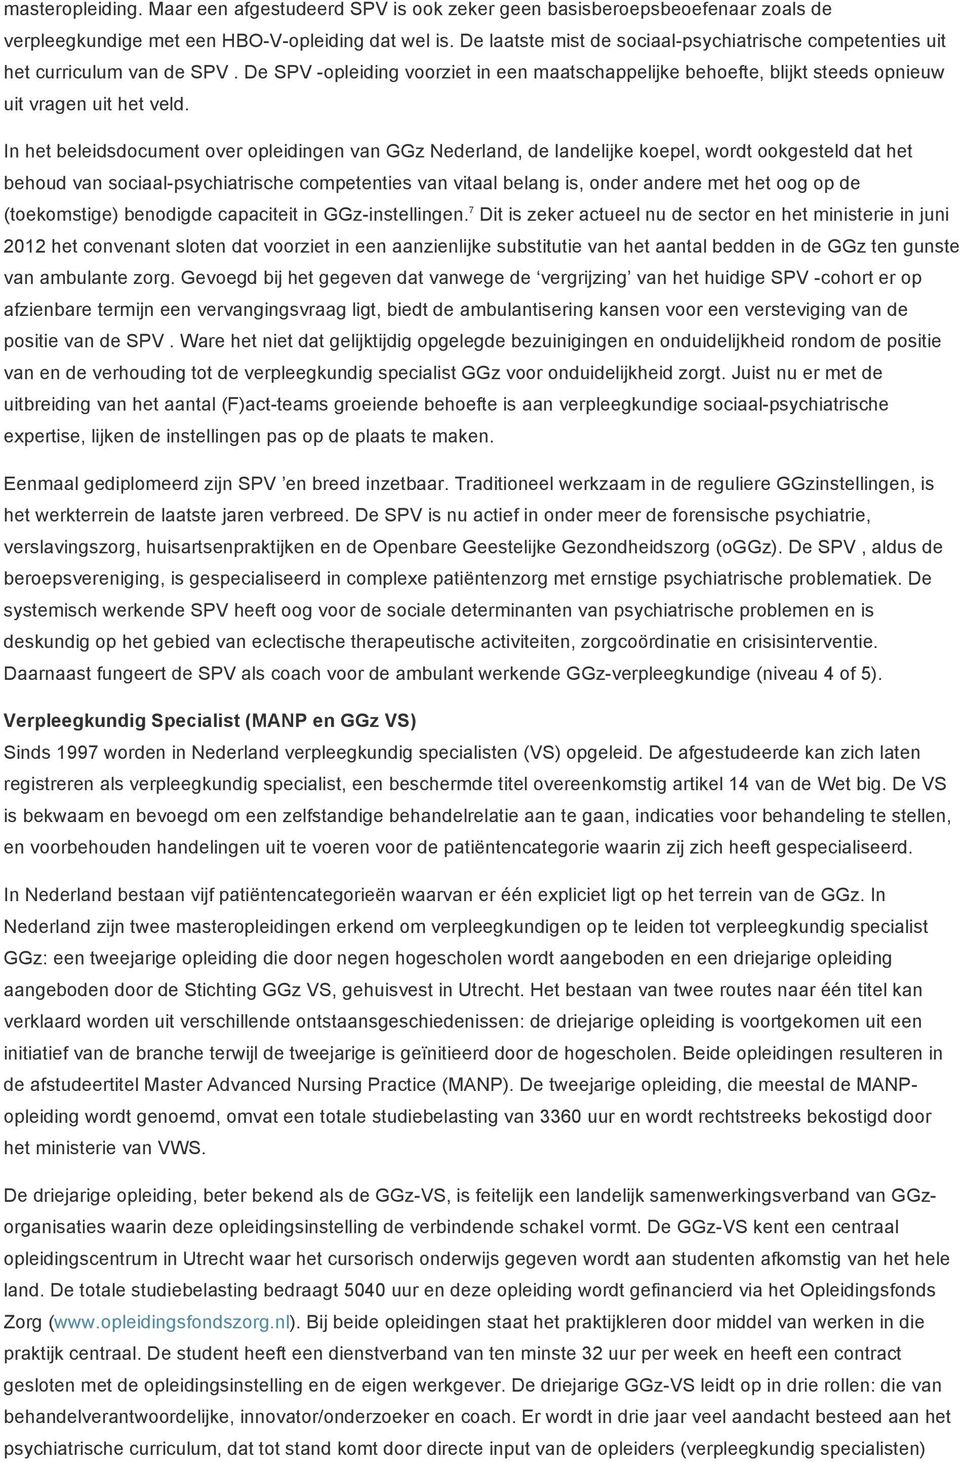 In het beleidsdocument over opleidingen van GGz Nederland, de landelijke koepel, wordt ookgesteld dat het behoud van sociaal-psychiatrische competenties van vitaal belang is, onder andere met het oog